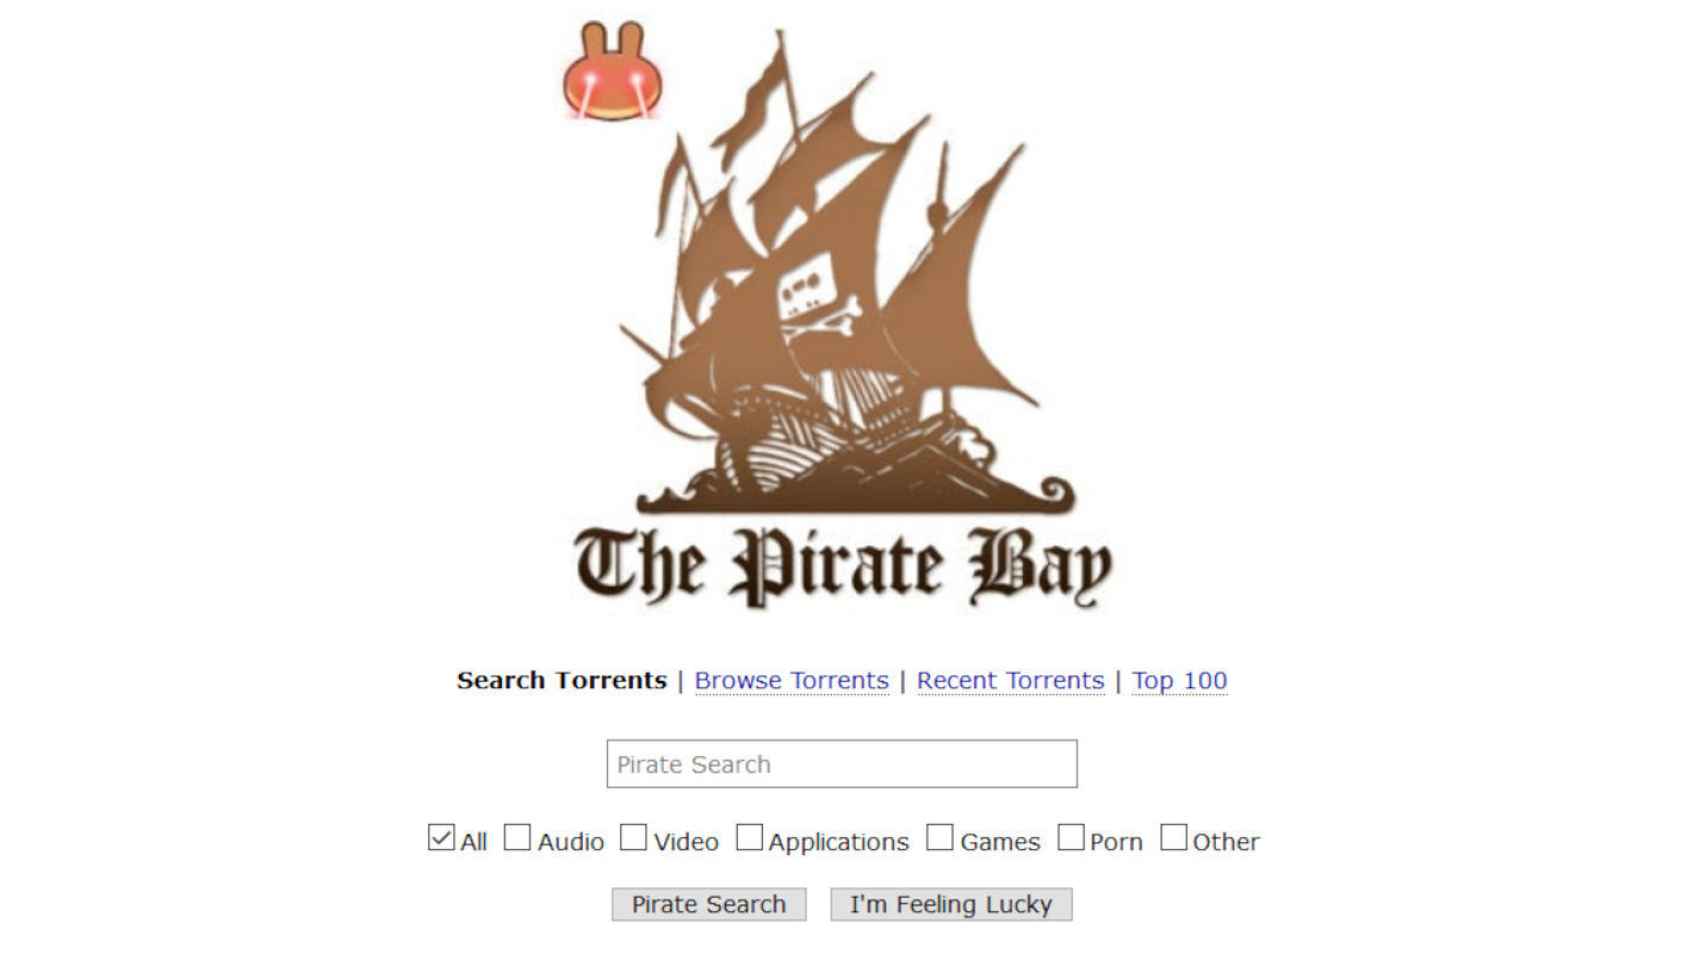 La página de Pirate Bay con el nuevo logotipo